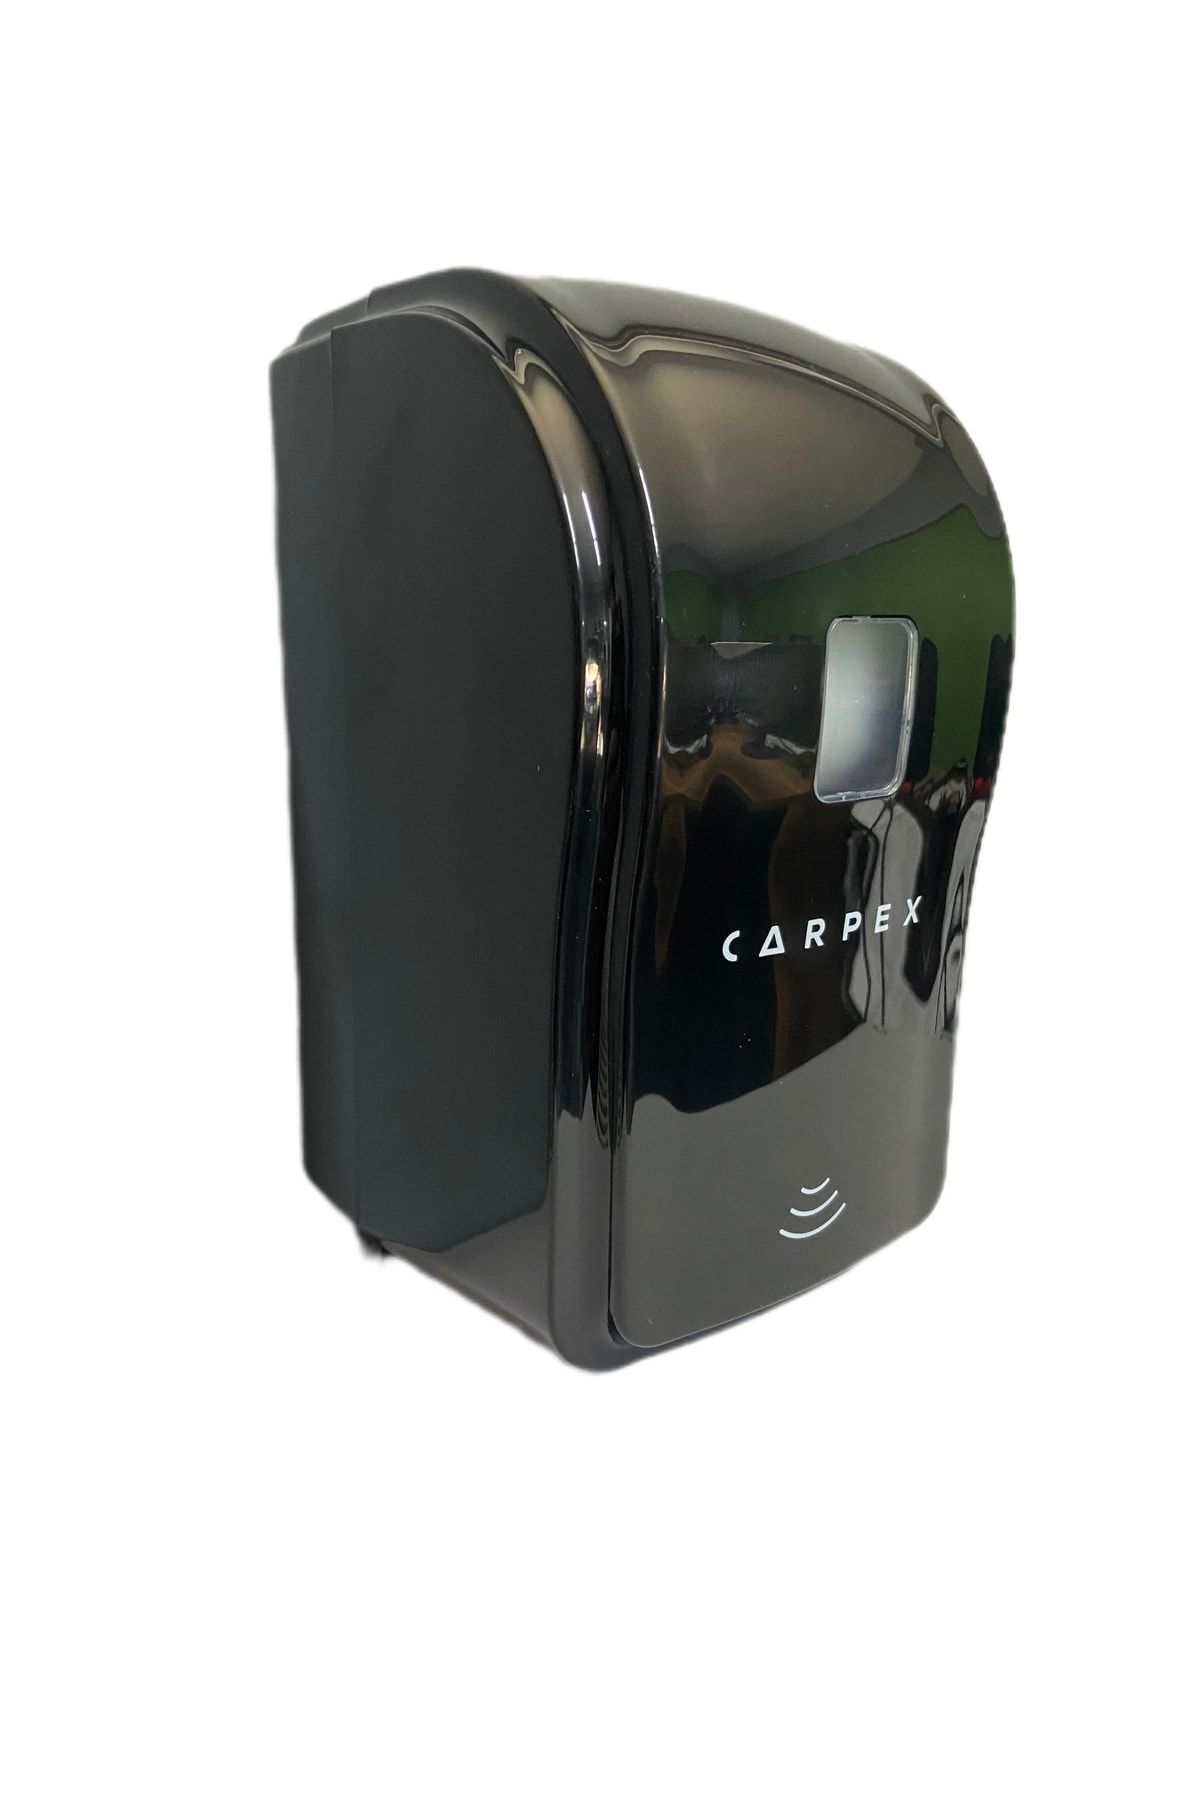 Carpex Optima Mini Otomatik Hazneli Köpük Sabun Aparatı Siyah